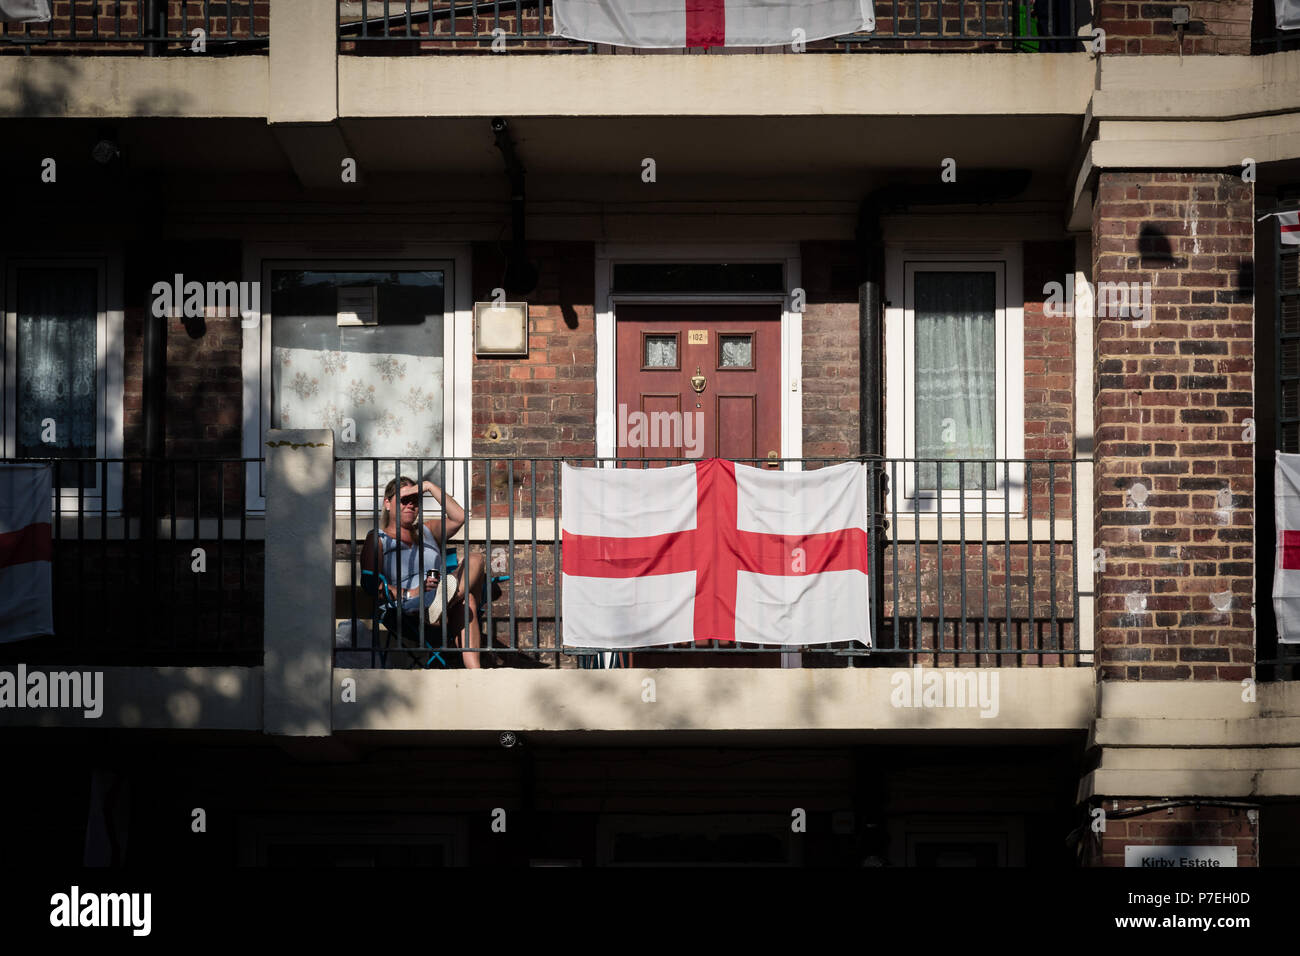 Les habitants de la patriotique Kirby Estate dans Bermondsey célébrer la Coupe du Monde de la FIFA 2018 la fièvre par couvrant leur domaine avec plus de 300 drapeaux de l'Angleterre. Banque D'Images